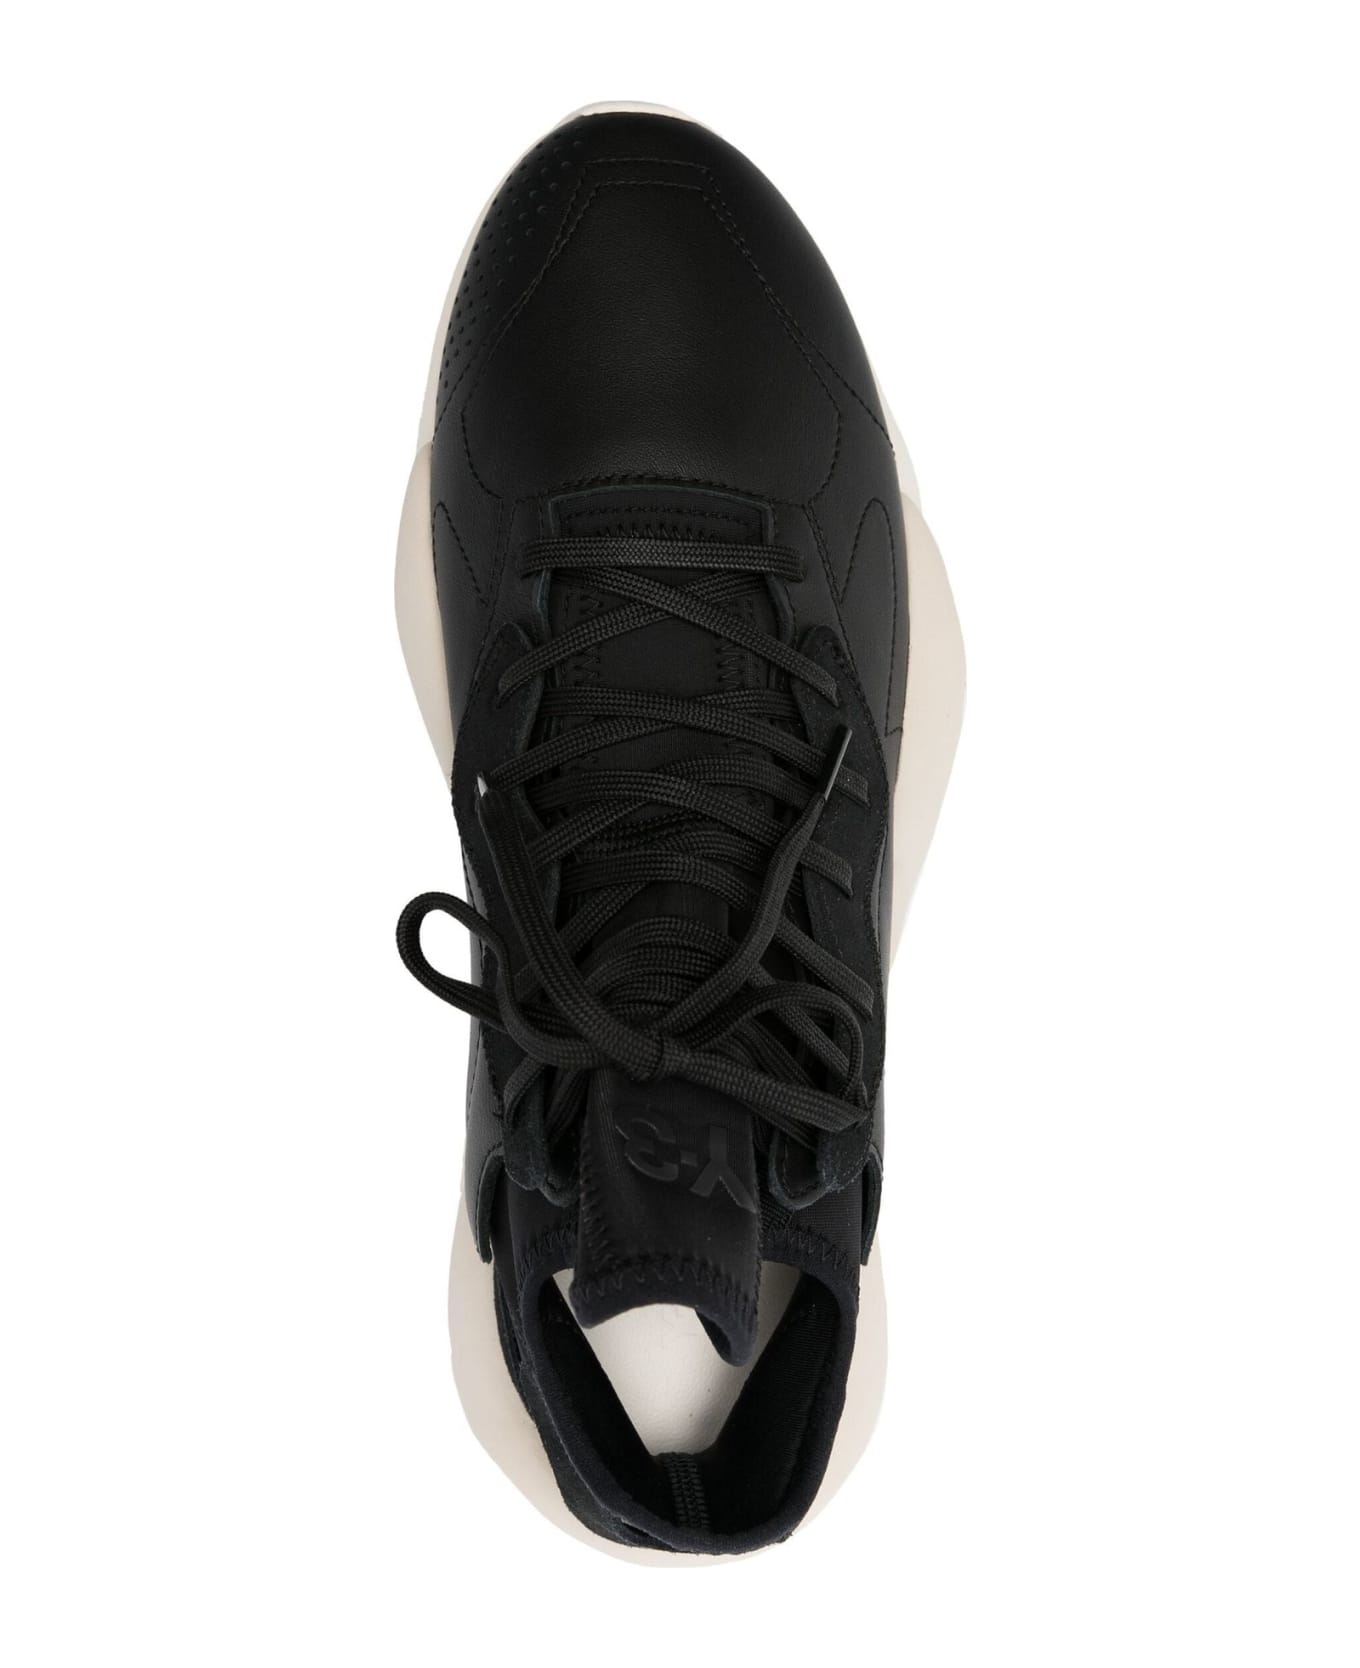 Y-3 Sneakers Black - Black スニーカー